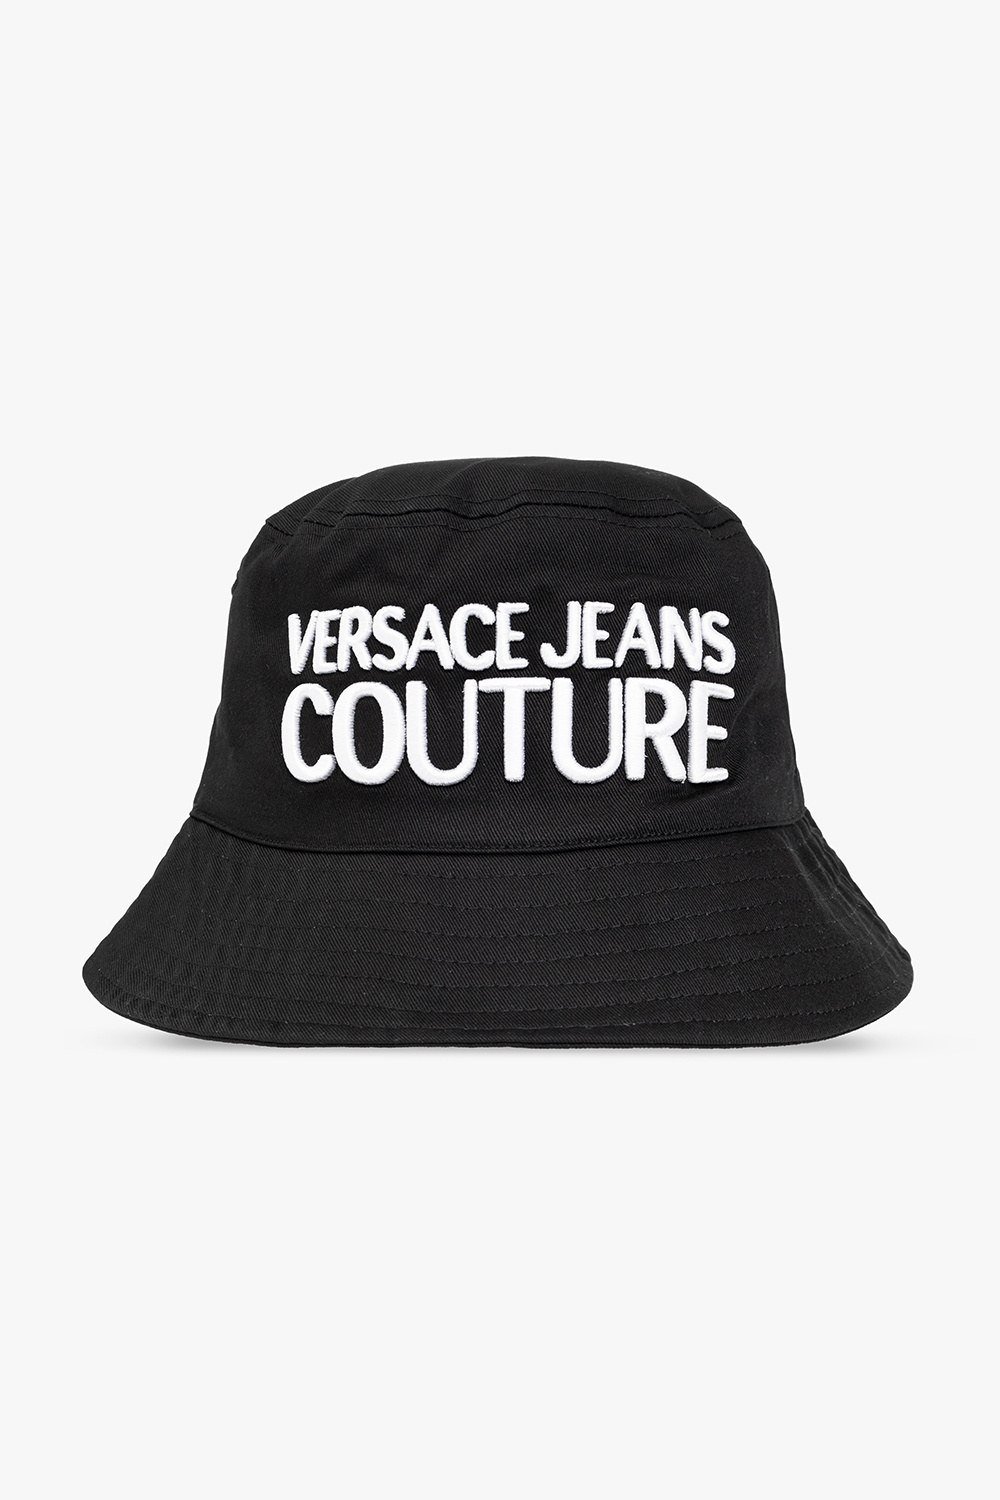 Versace Jeans Couture Nike x Ambush colour-block cap